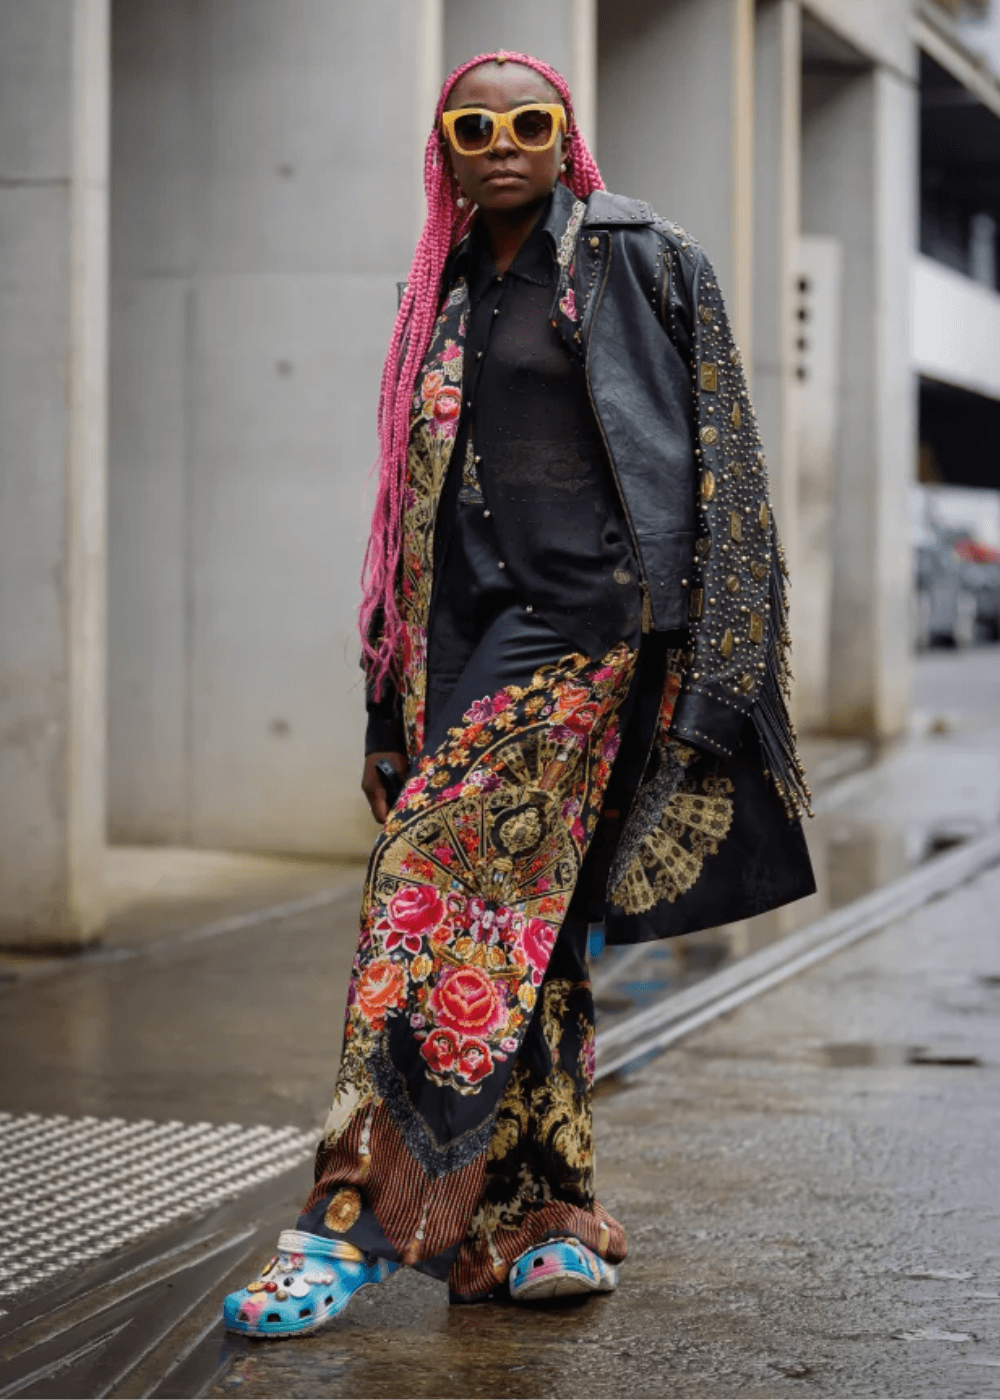 N/A - roupa colorida - sapato personalizado - inverno - mulher negra de tranças em pé na rua usando óculos de sol - https://stealthelook.com.br